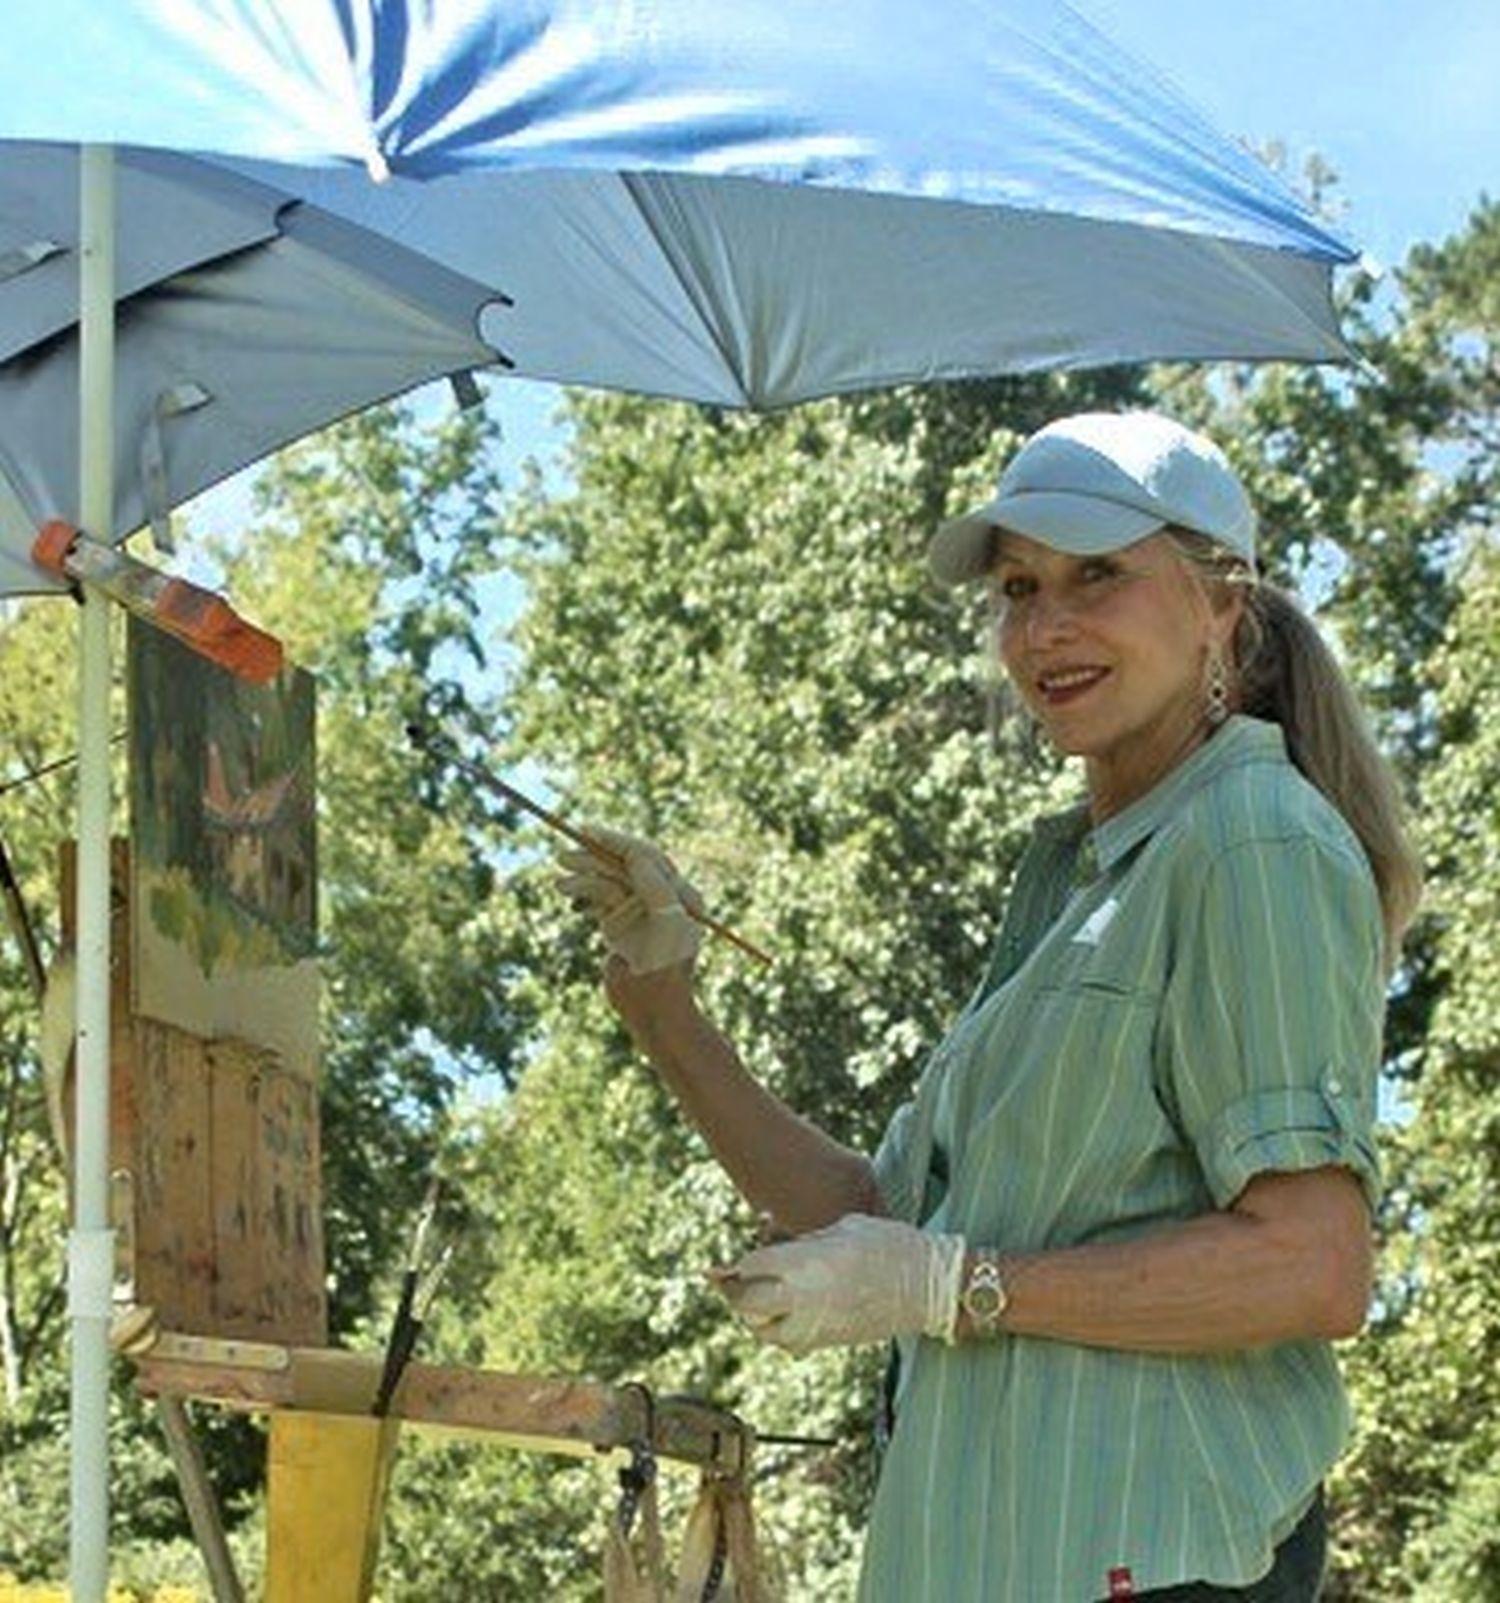 Beaver Pond, Plein Air Landscape Original Fine Art Oil on Linen Board - Gray Landscape Painting by Dee Beard Dean